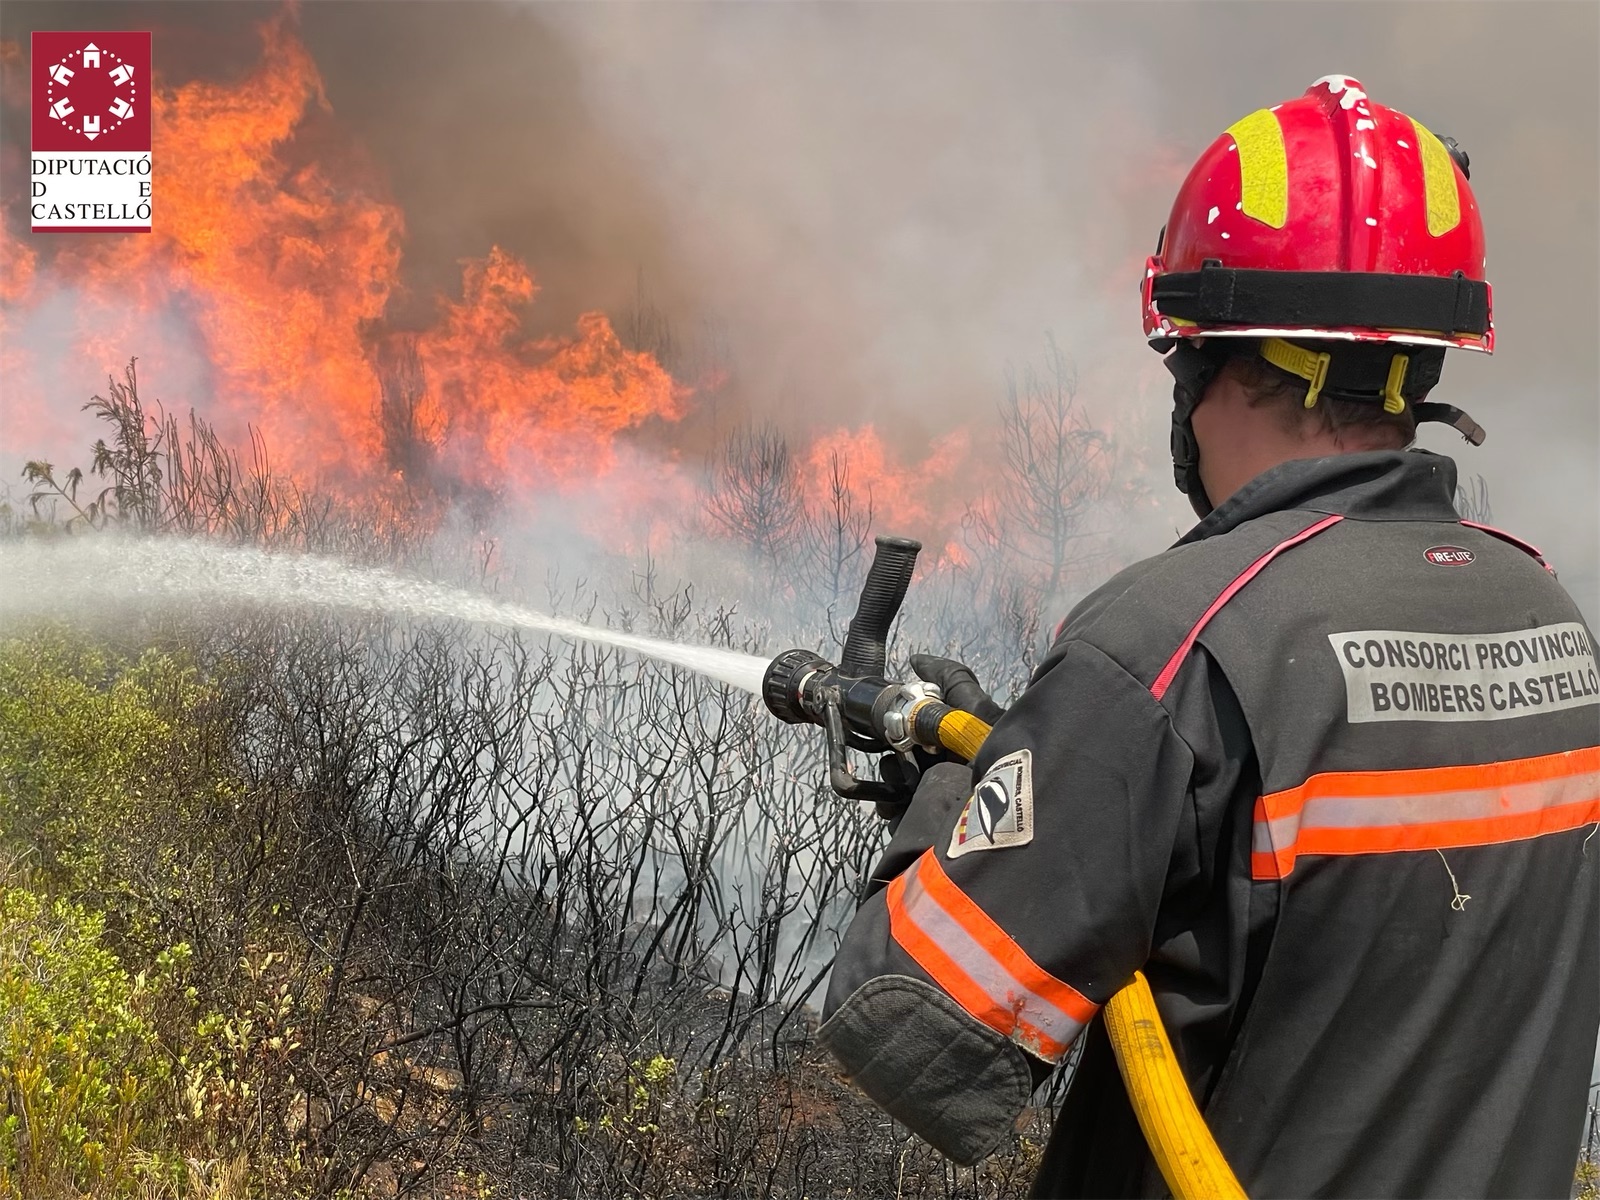 Falomir reconeix la labor «impecable» de bombers, cossos de seguretat i alcaldes en els incendis forestals